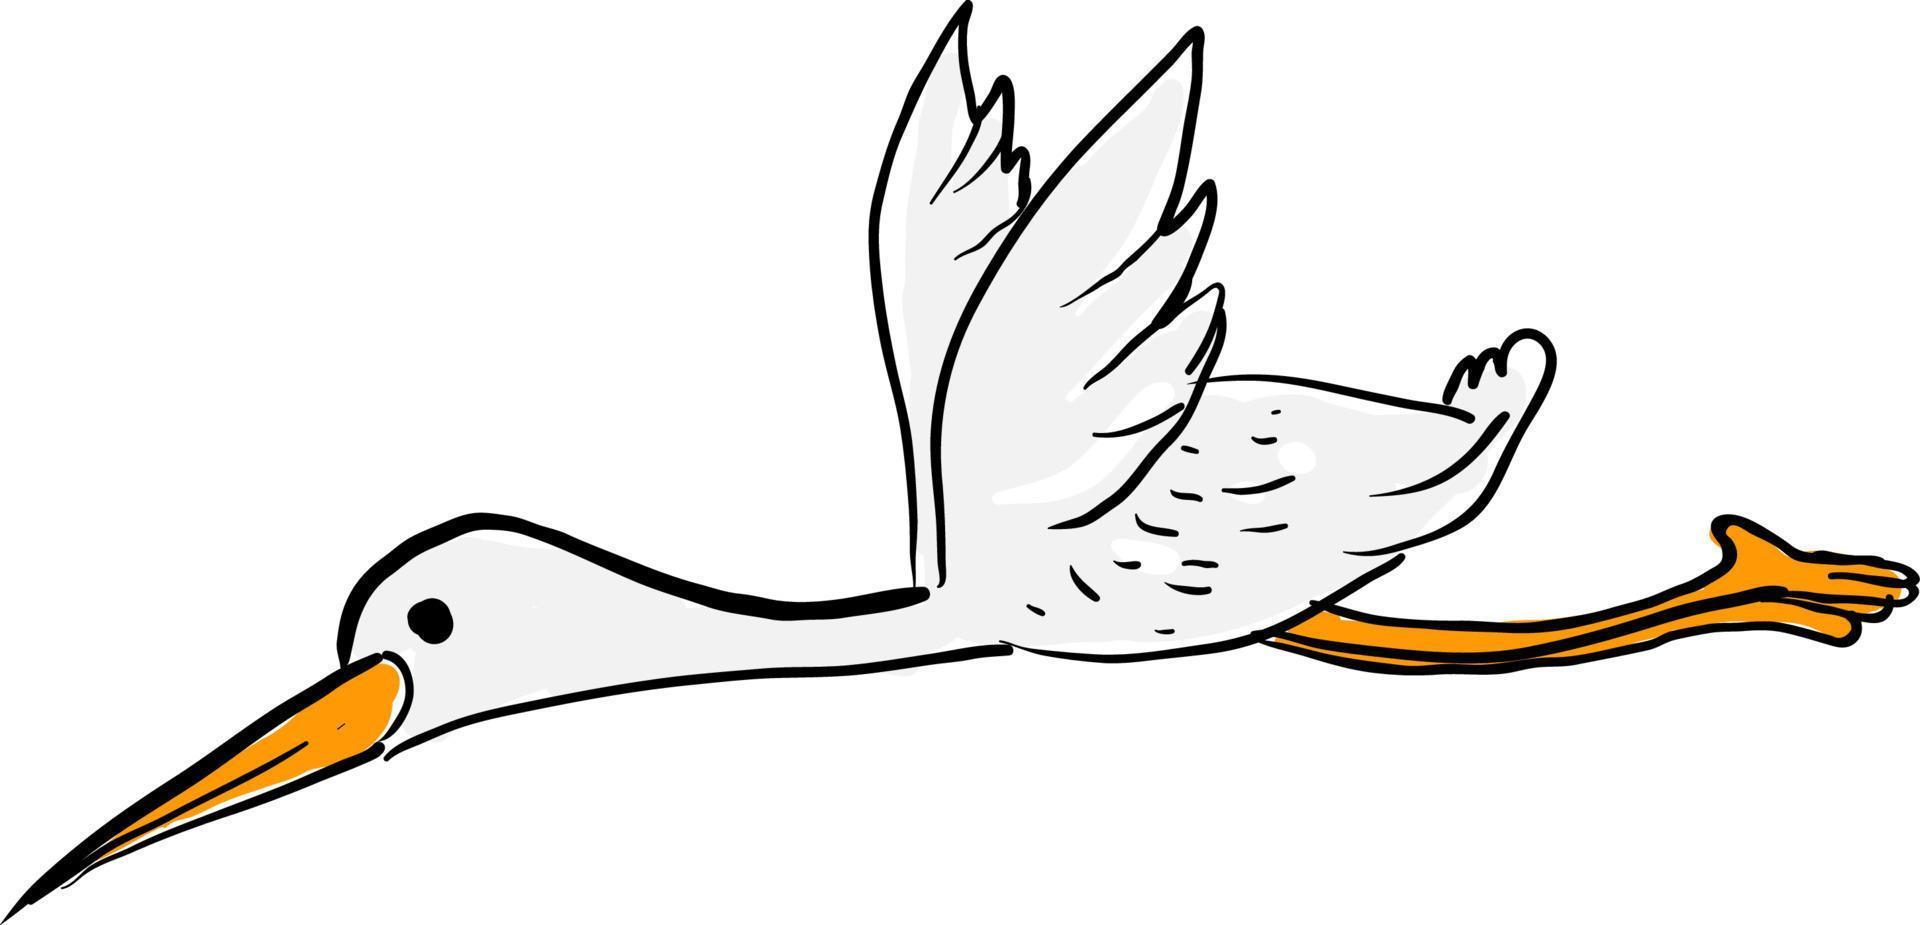 Cigüeña voladora, ilustración, vector sobre fondo blanco.